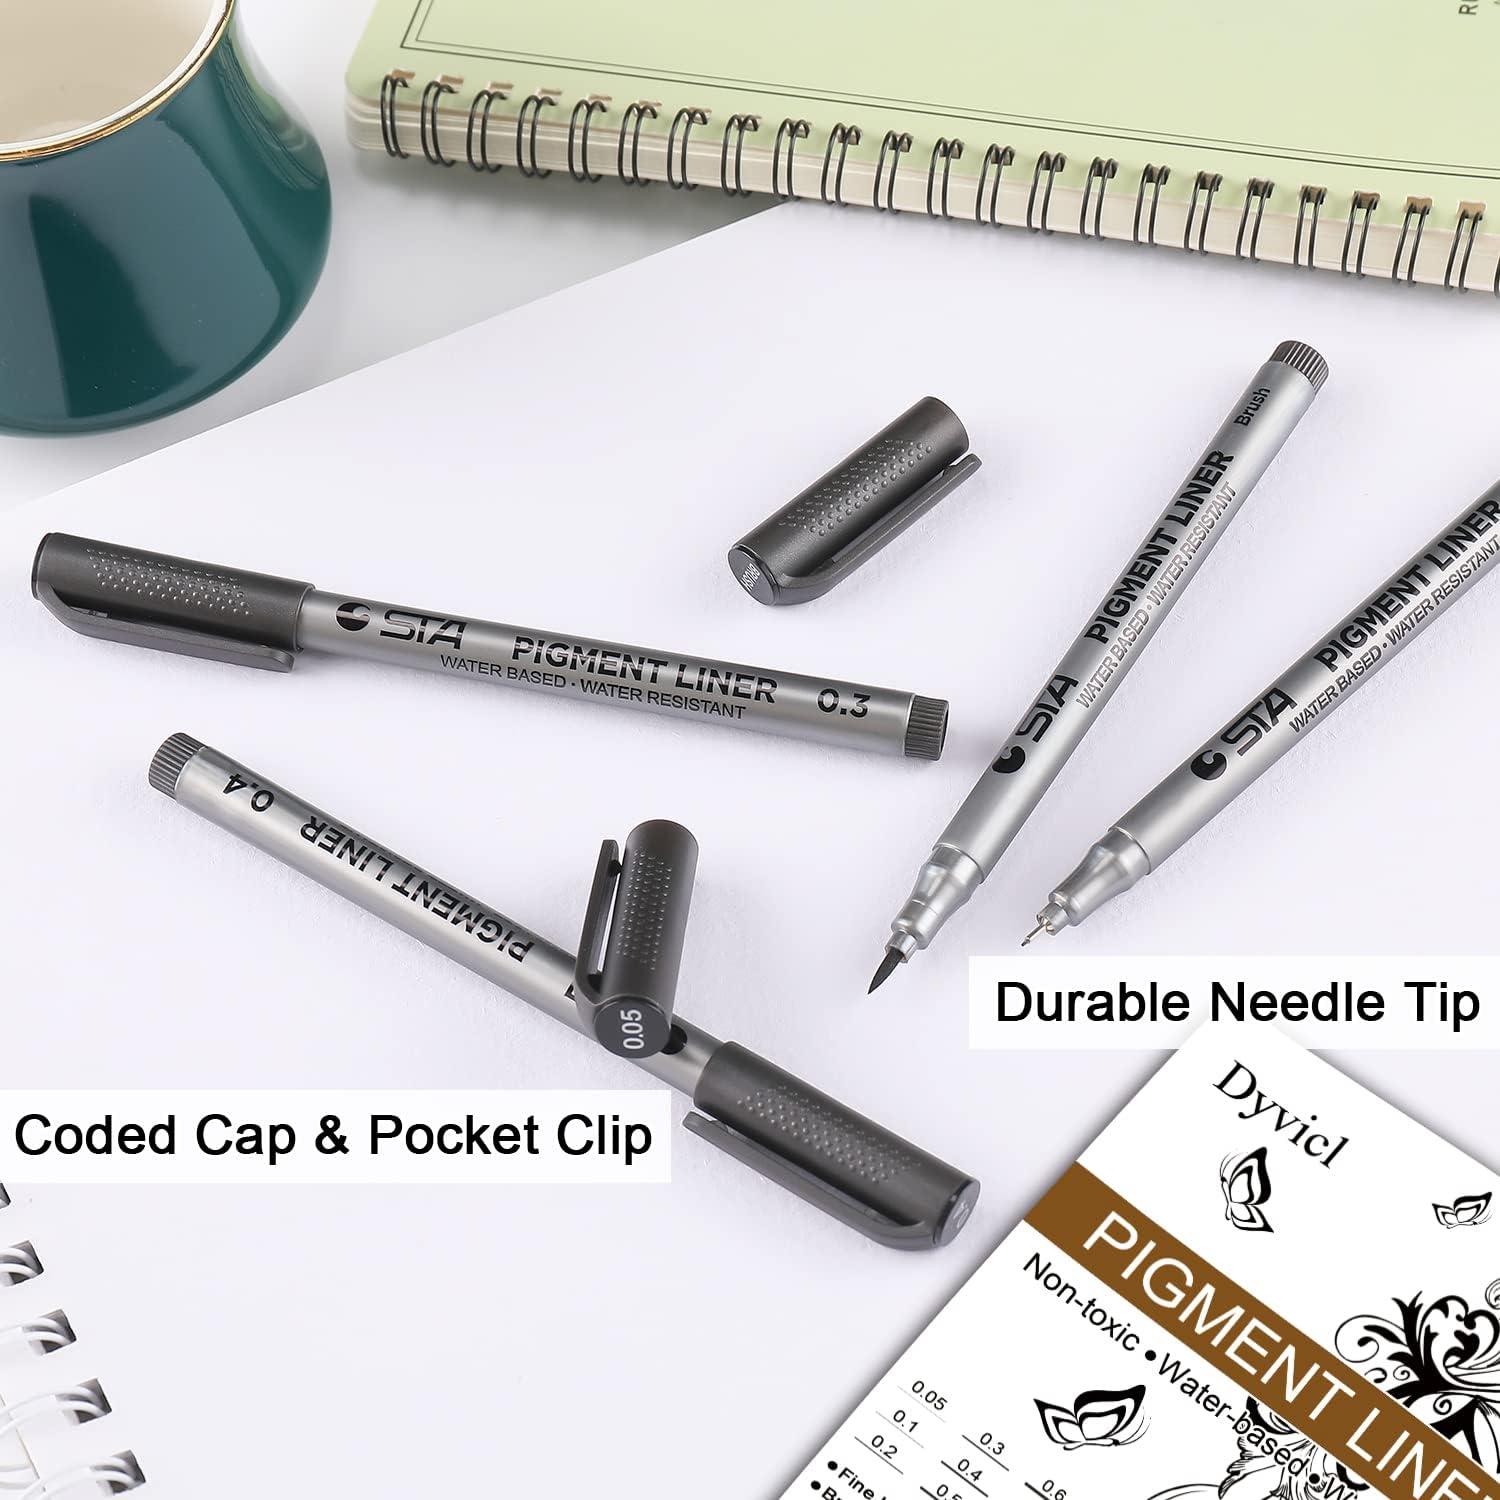 9pcs Drawing Pens Set, Art Pens, Ink Pens For Drawing, Sketching Pen,  Artist Pen, Black Fine Tip Pen, Fine Pen, Cartoon Pen, Outline Pen,  Suitable For Adults, Students